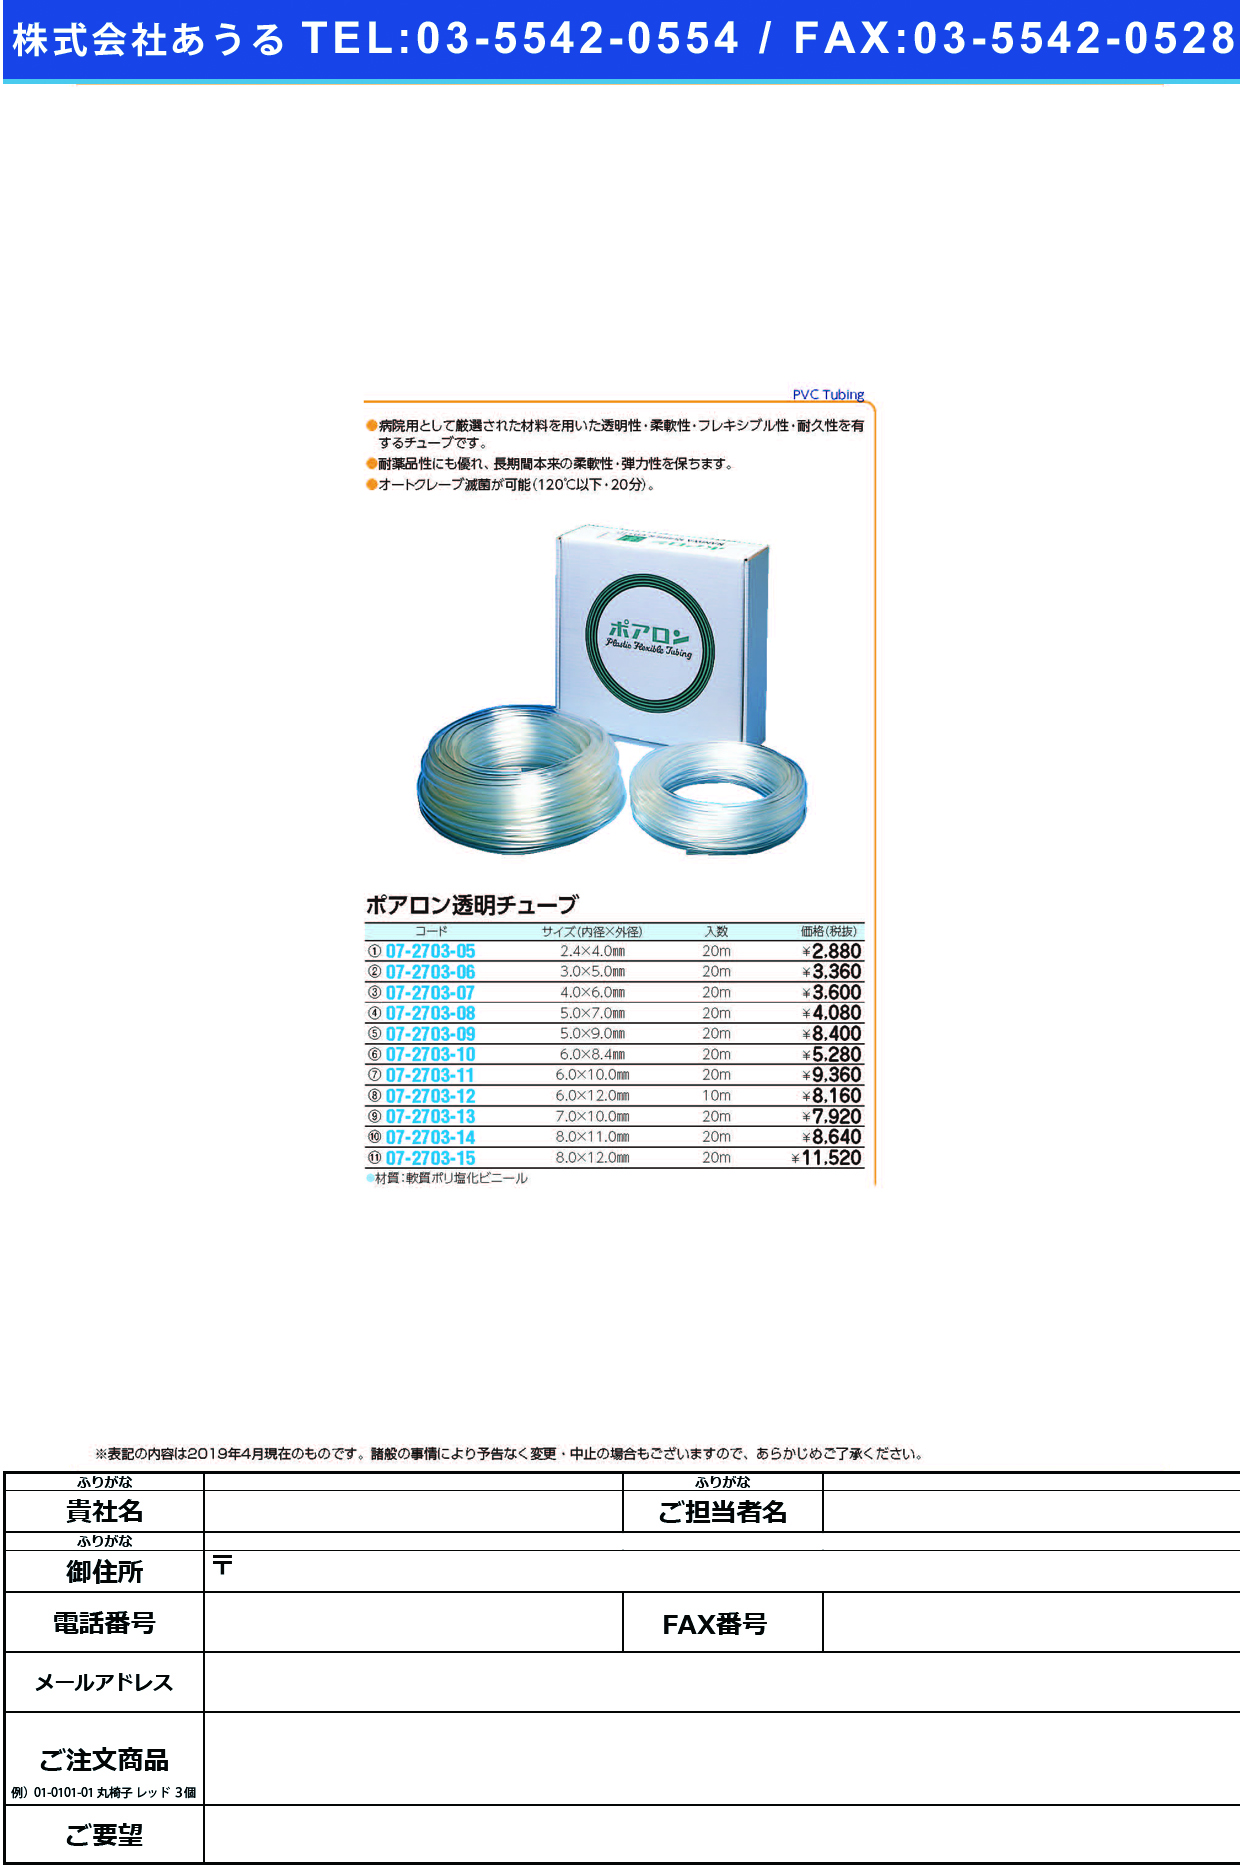 (07-2703-11)ポアロン透明チューブ 6X10MM(20Mｲﾘ) ﾎﾟｱﾛﾝﾄｳﾒｲﾁｭｰﾌﾞ【1箱単位】【2019年カタログ商品】